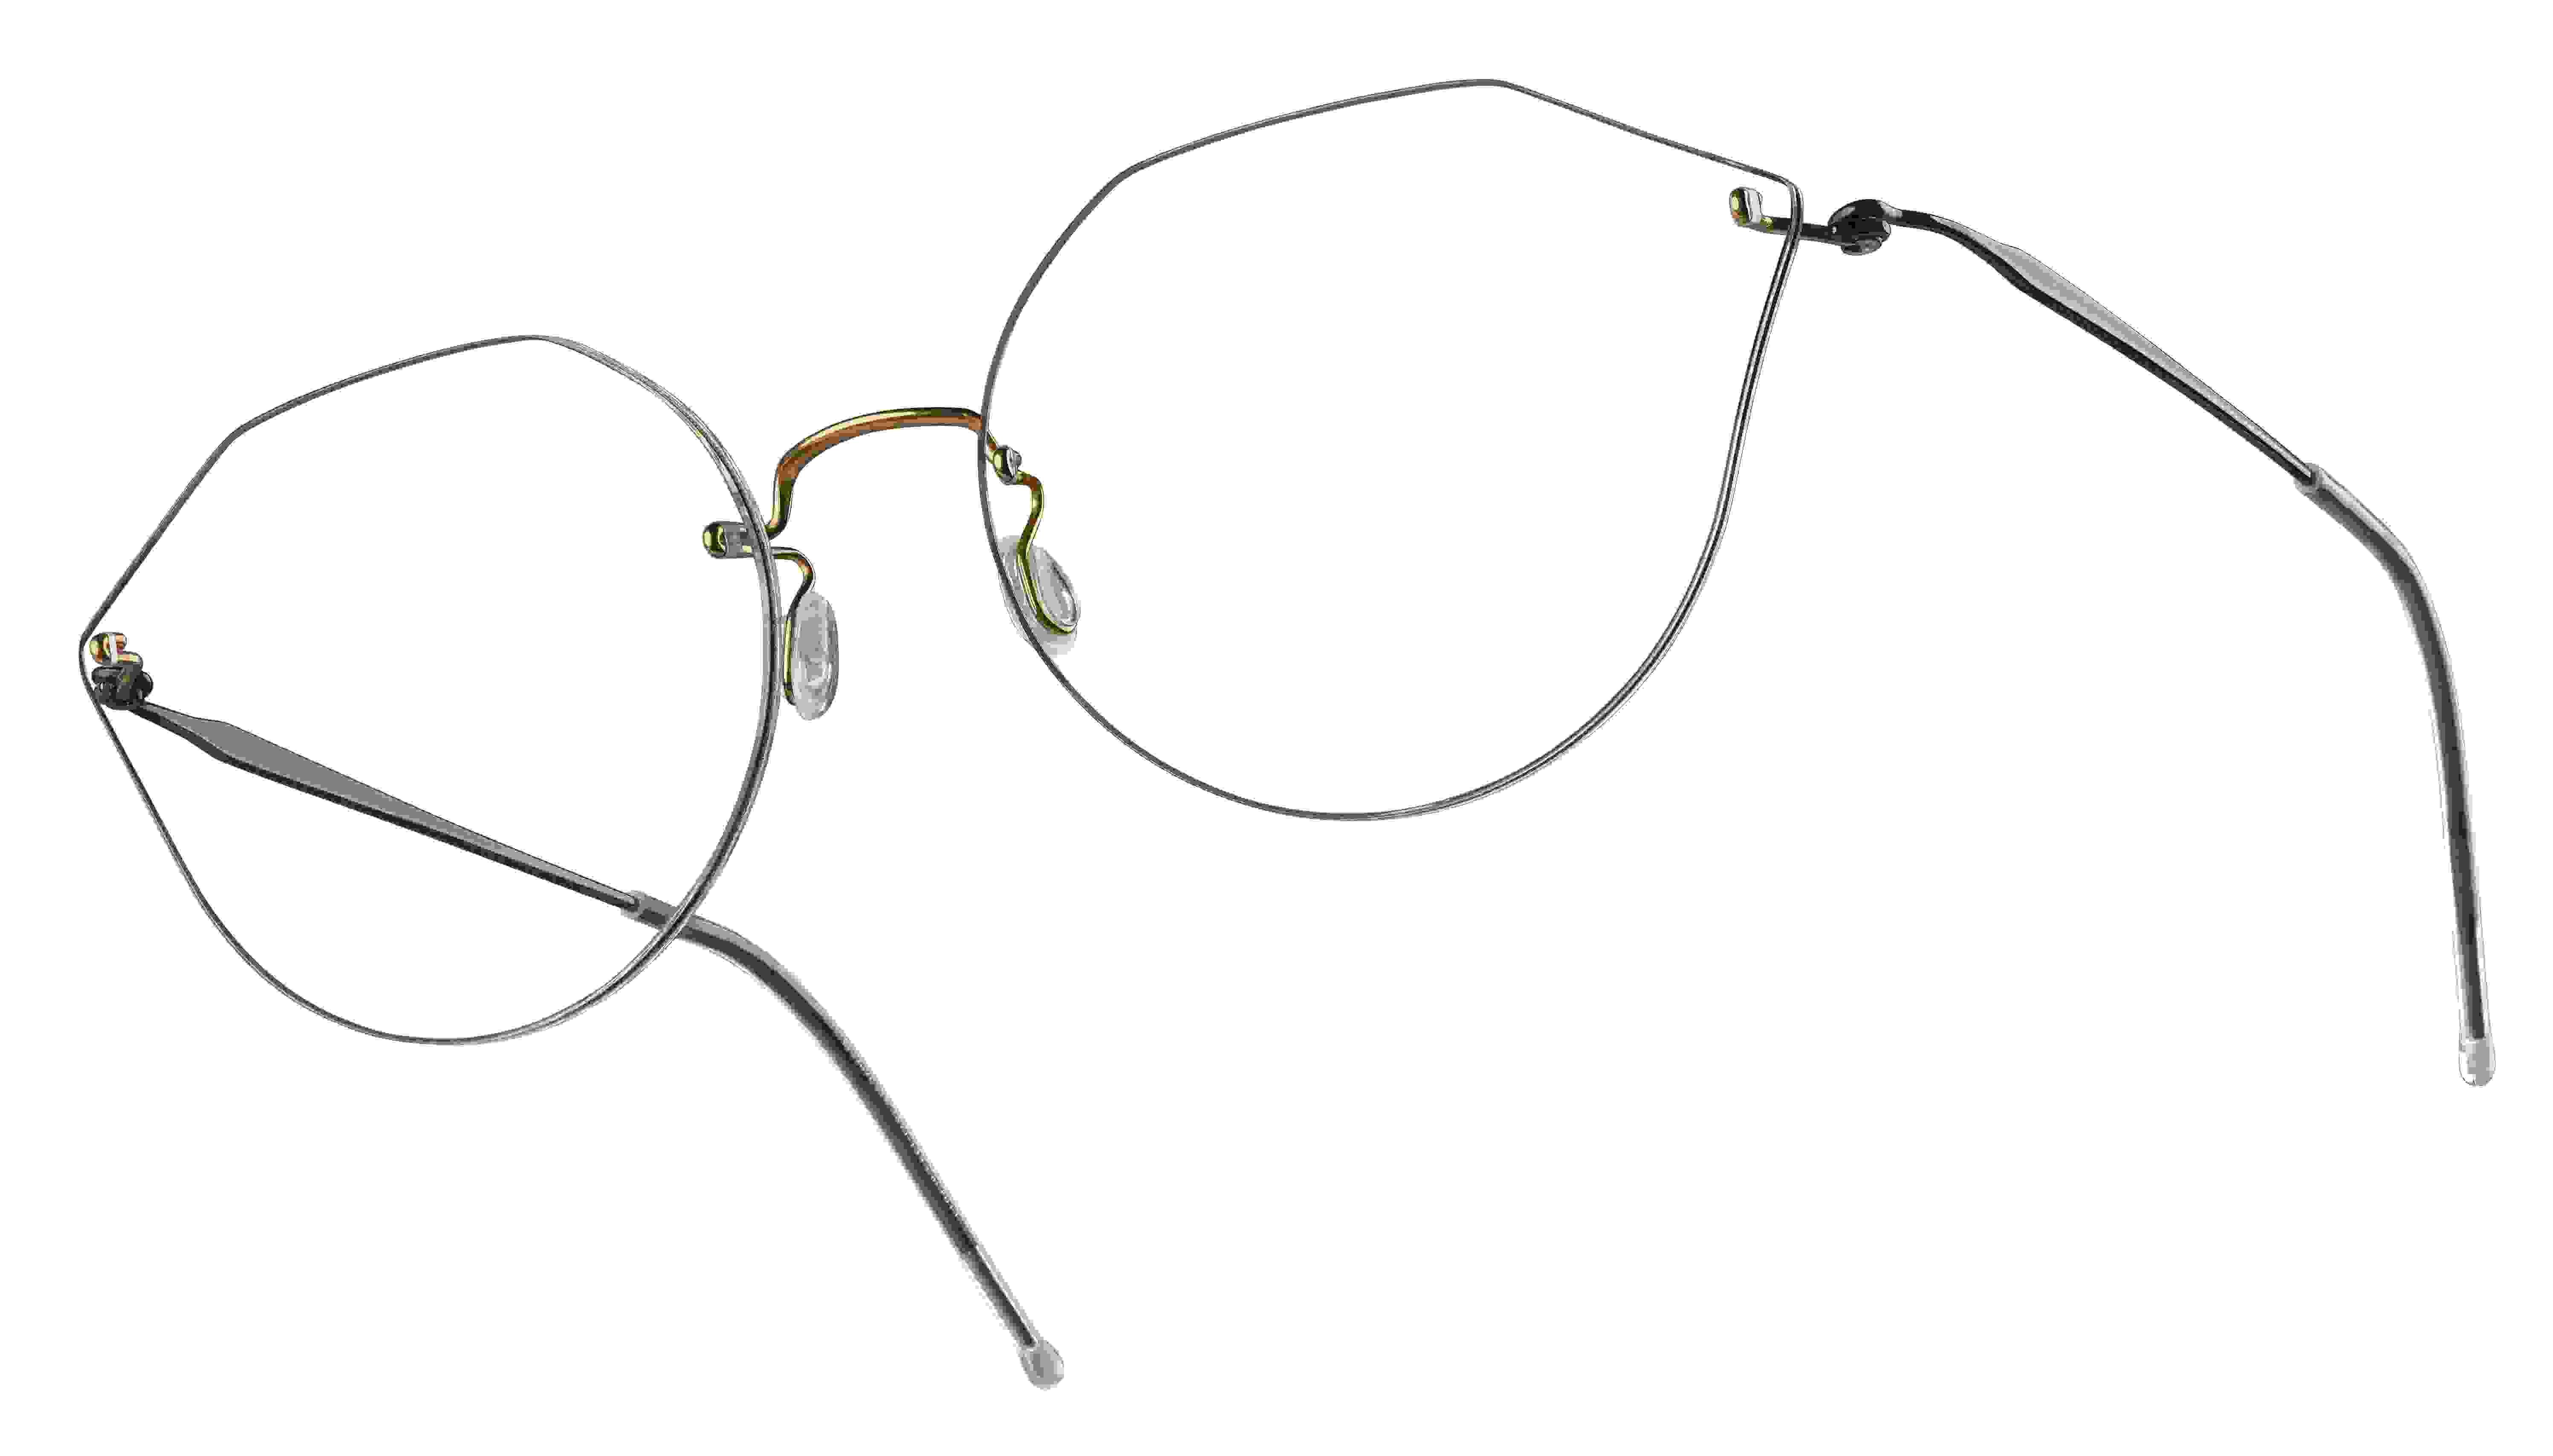 Korrekturbrille mit ausgefallenen Brillengläsern und dünne, silbernen Gestell.